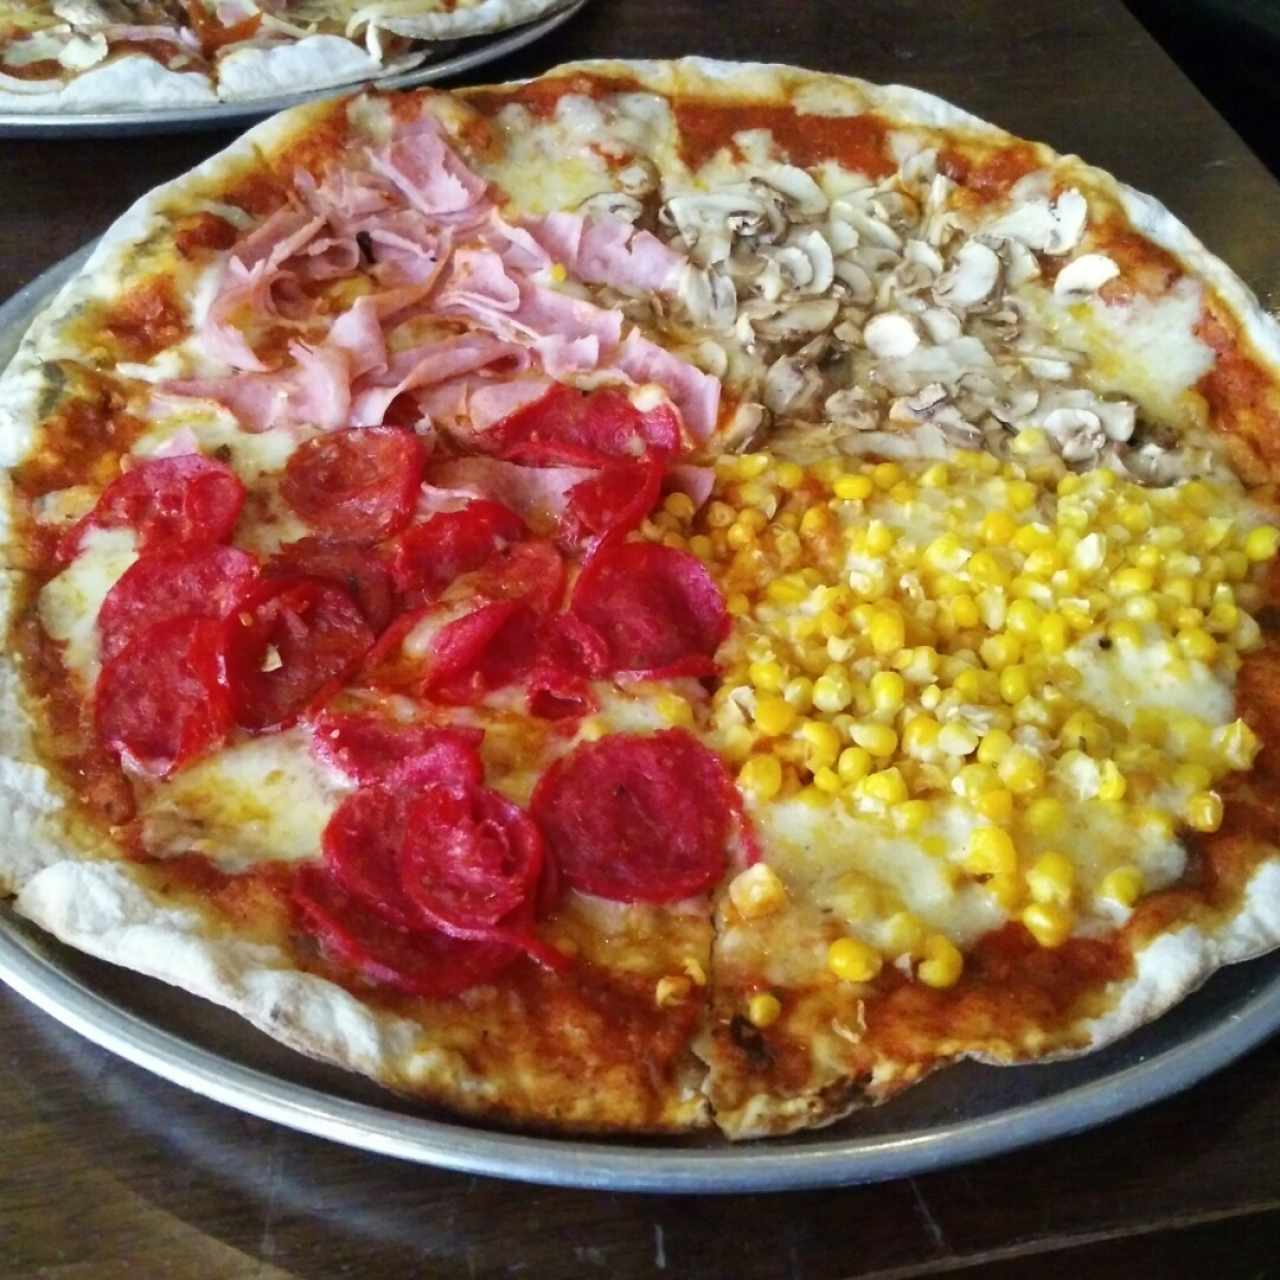 Pizza Quattro